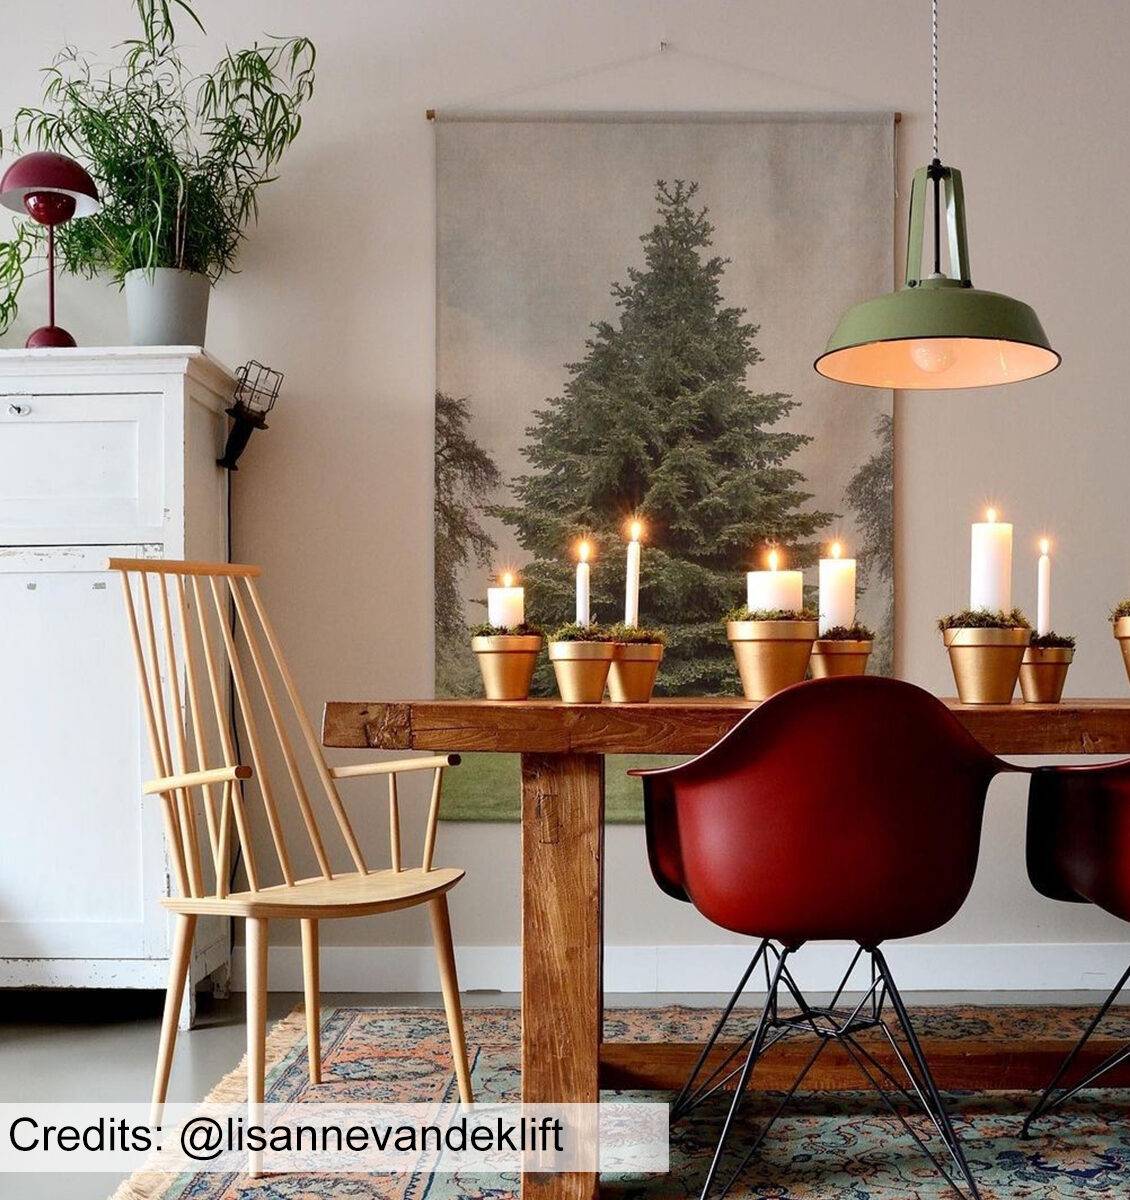 NL wandkleed met kerstboom afbeelding aan de muur boven eettafel